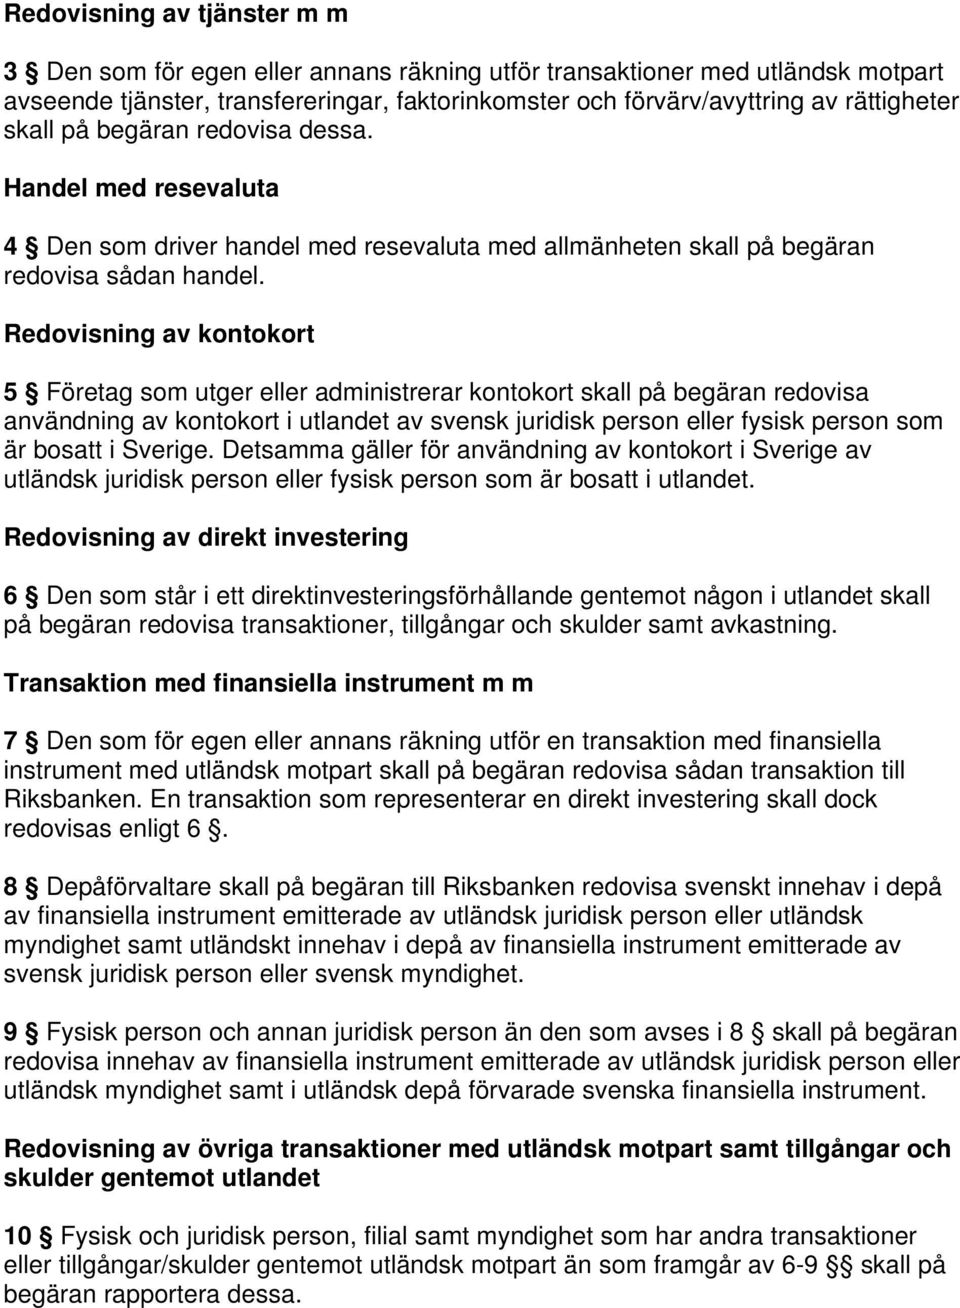 Redovisning av kontokort 5 Företag som utger eller administrerar kontokort skall på begäran redovisa användning av kontokort i utlandet av svensk juridisk person eller fysisk person som är bosatt i